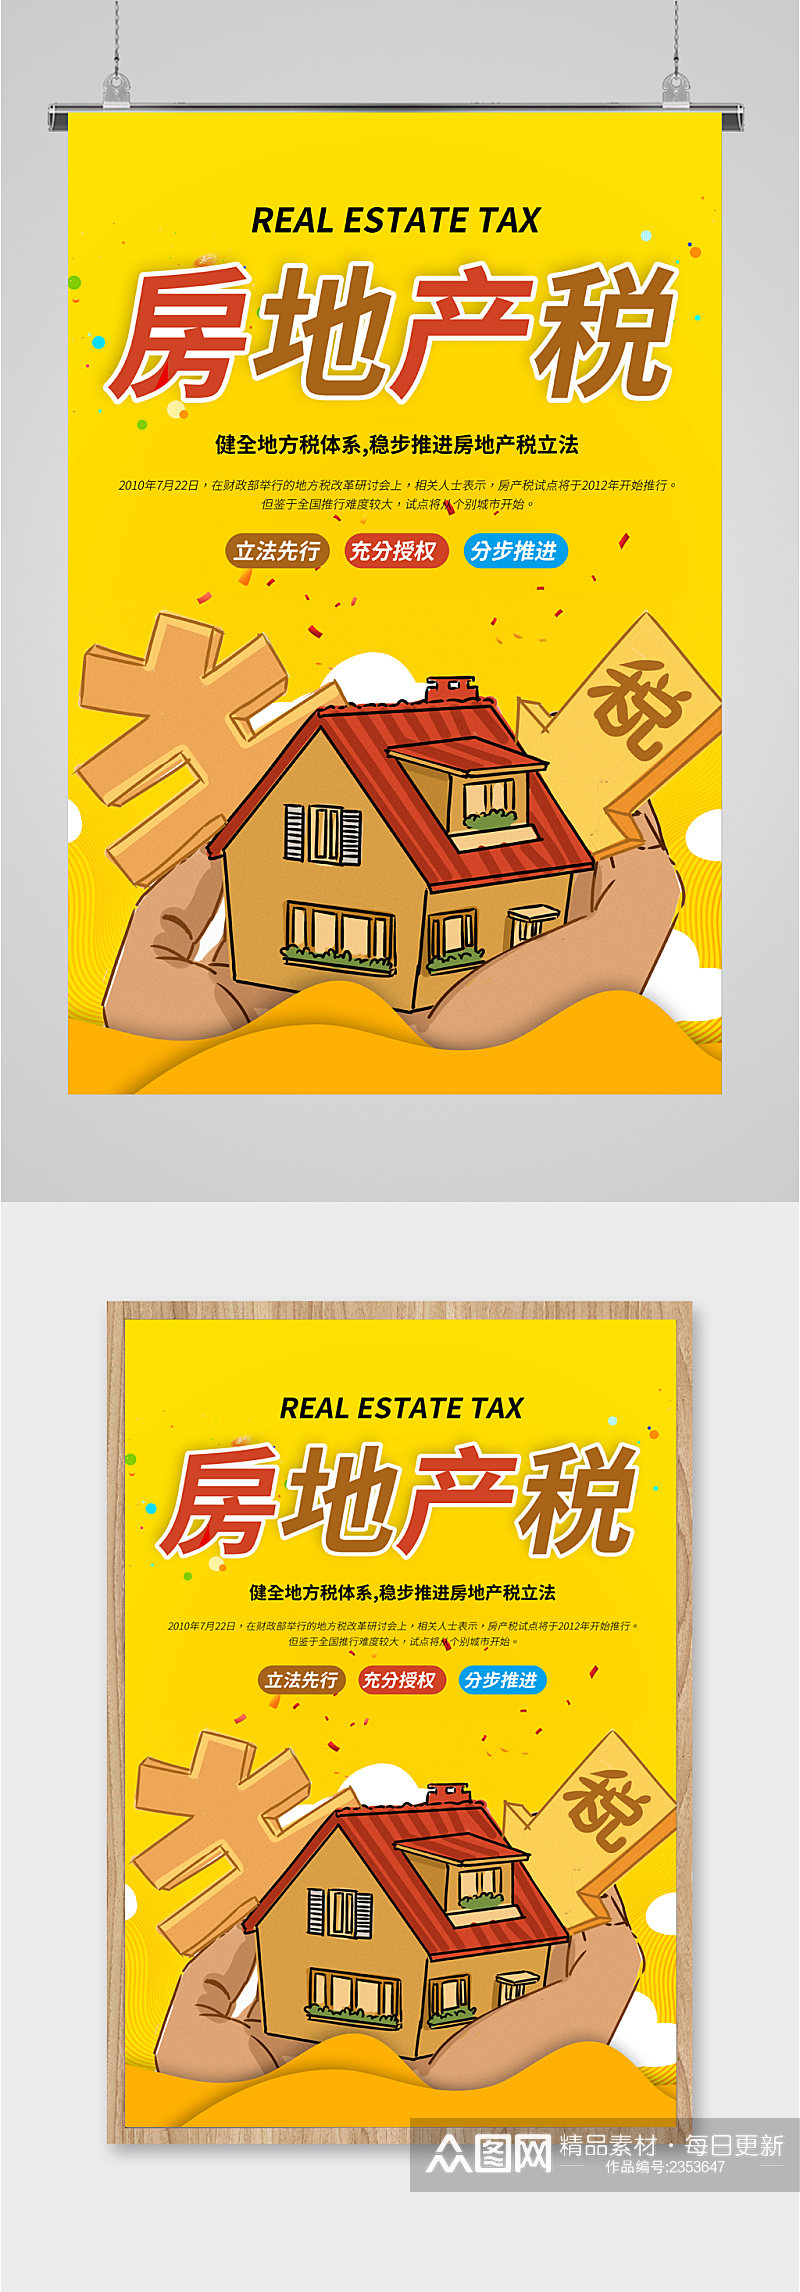 房地产税利税海报素材